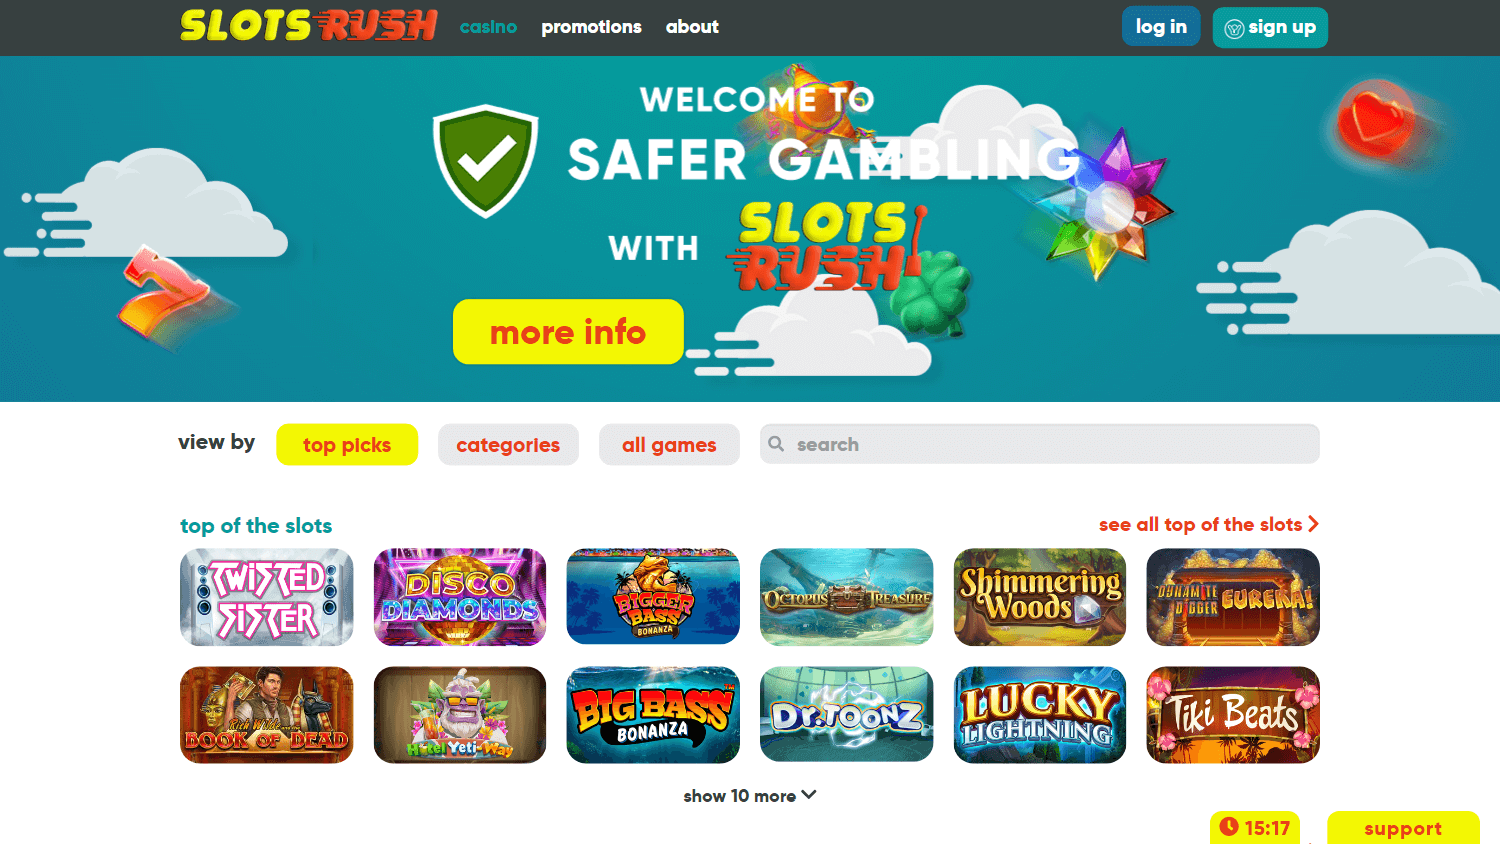 slots_rush_casino_homepage_desktop